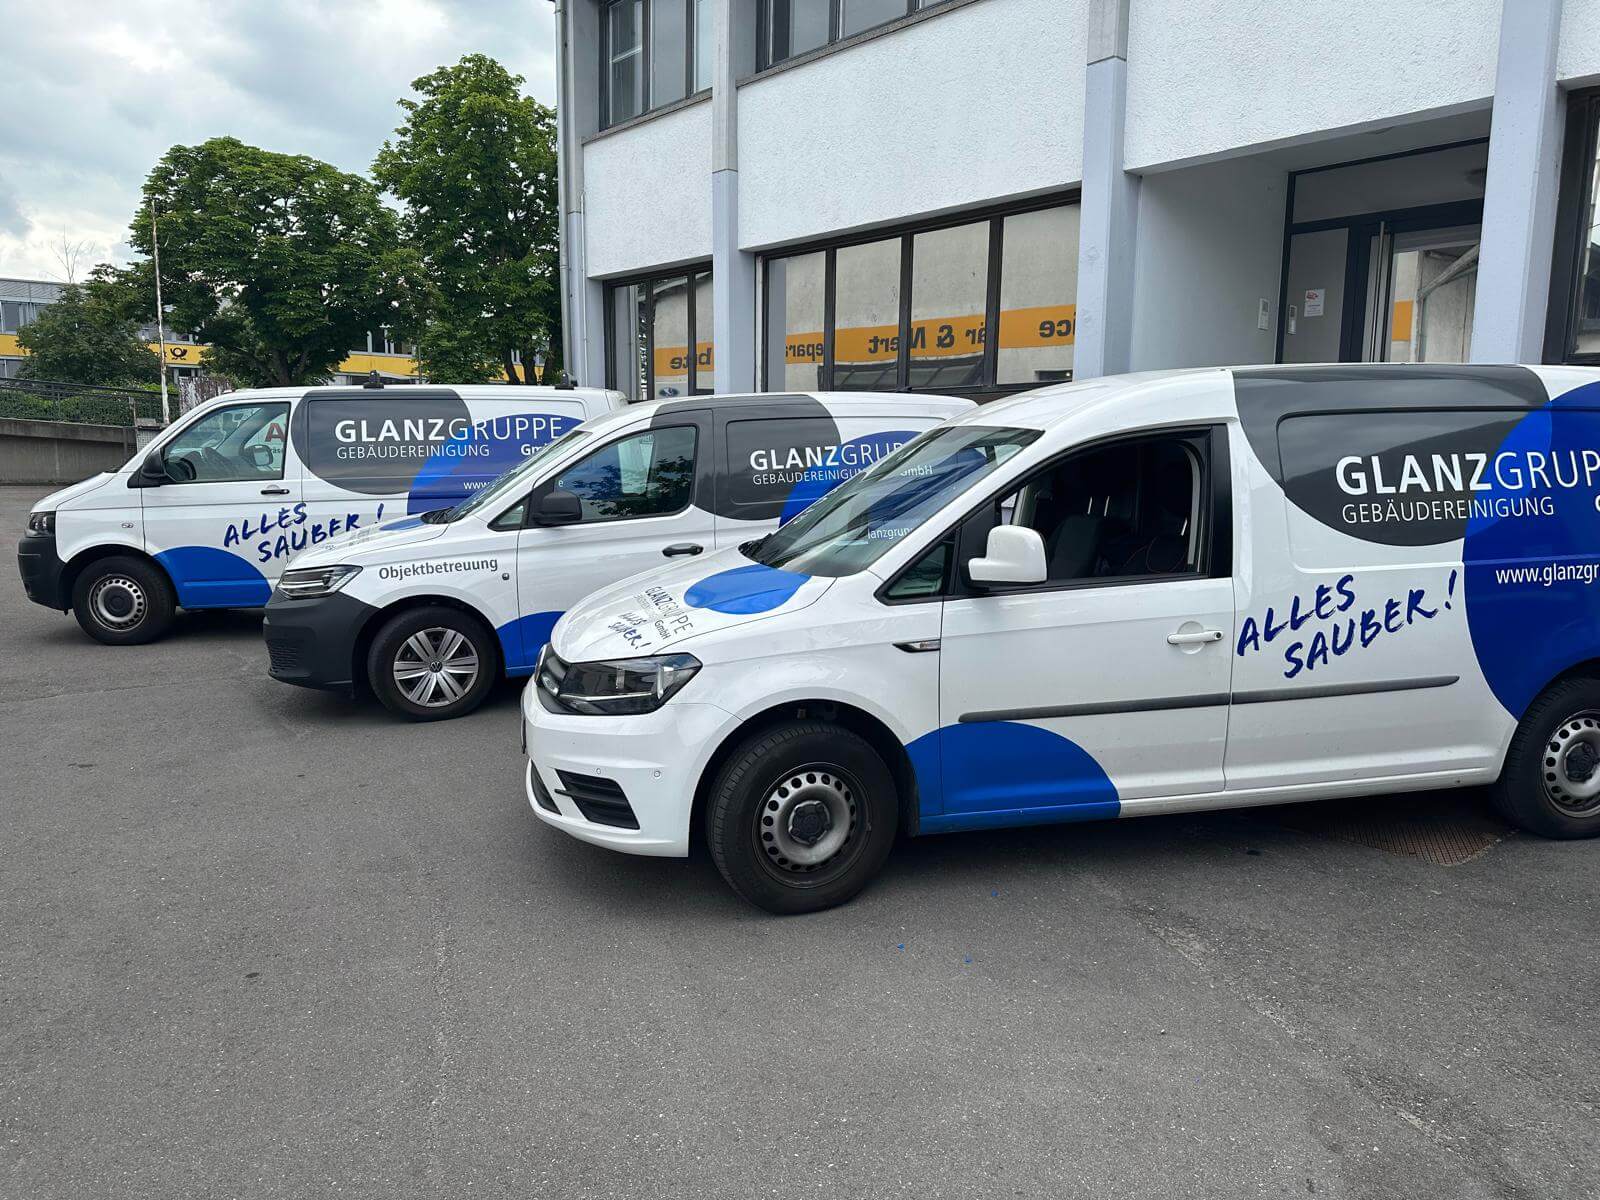 Glanzgruppe Gebäudereinigung GmbH